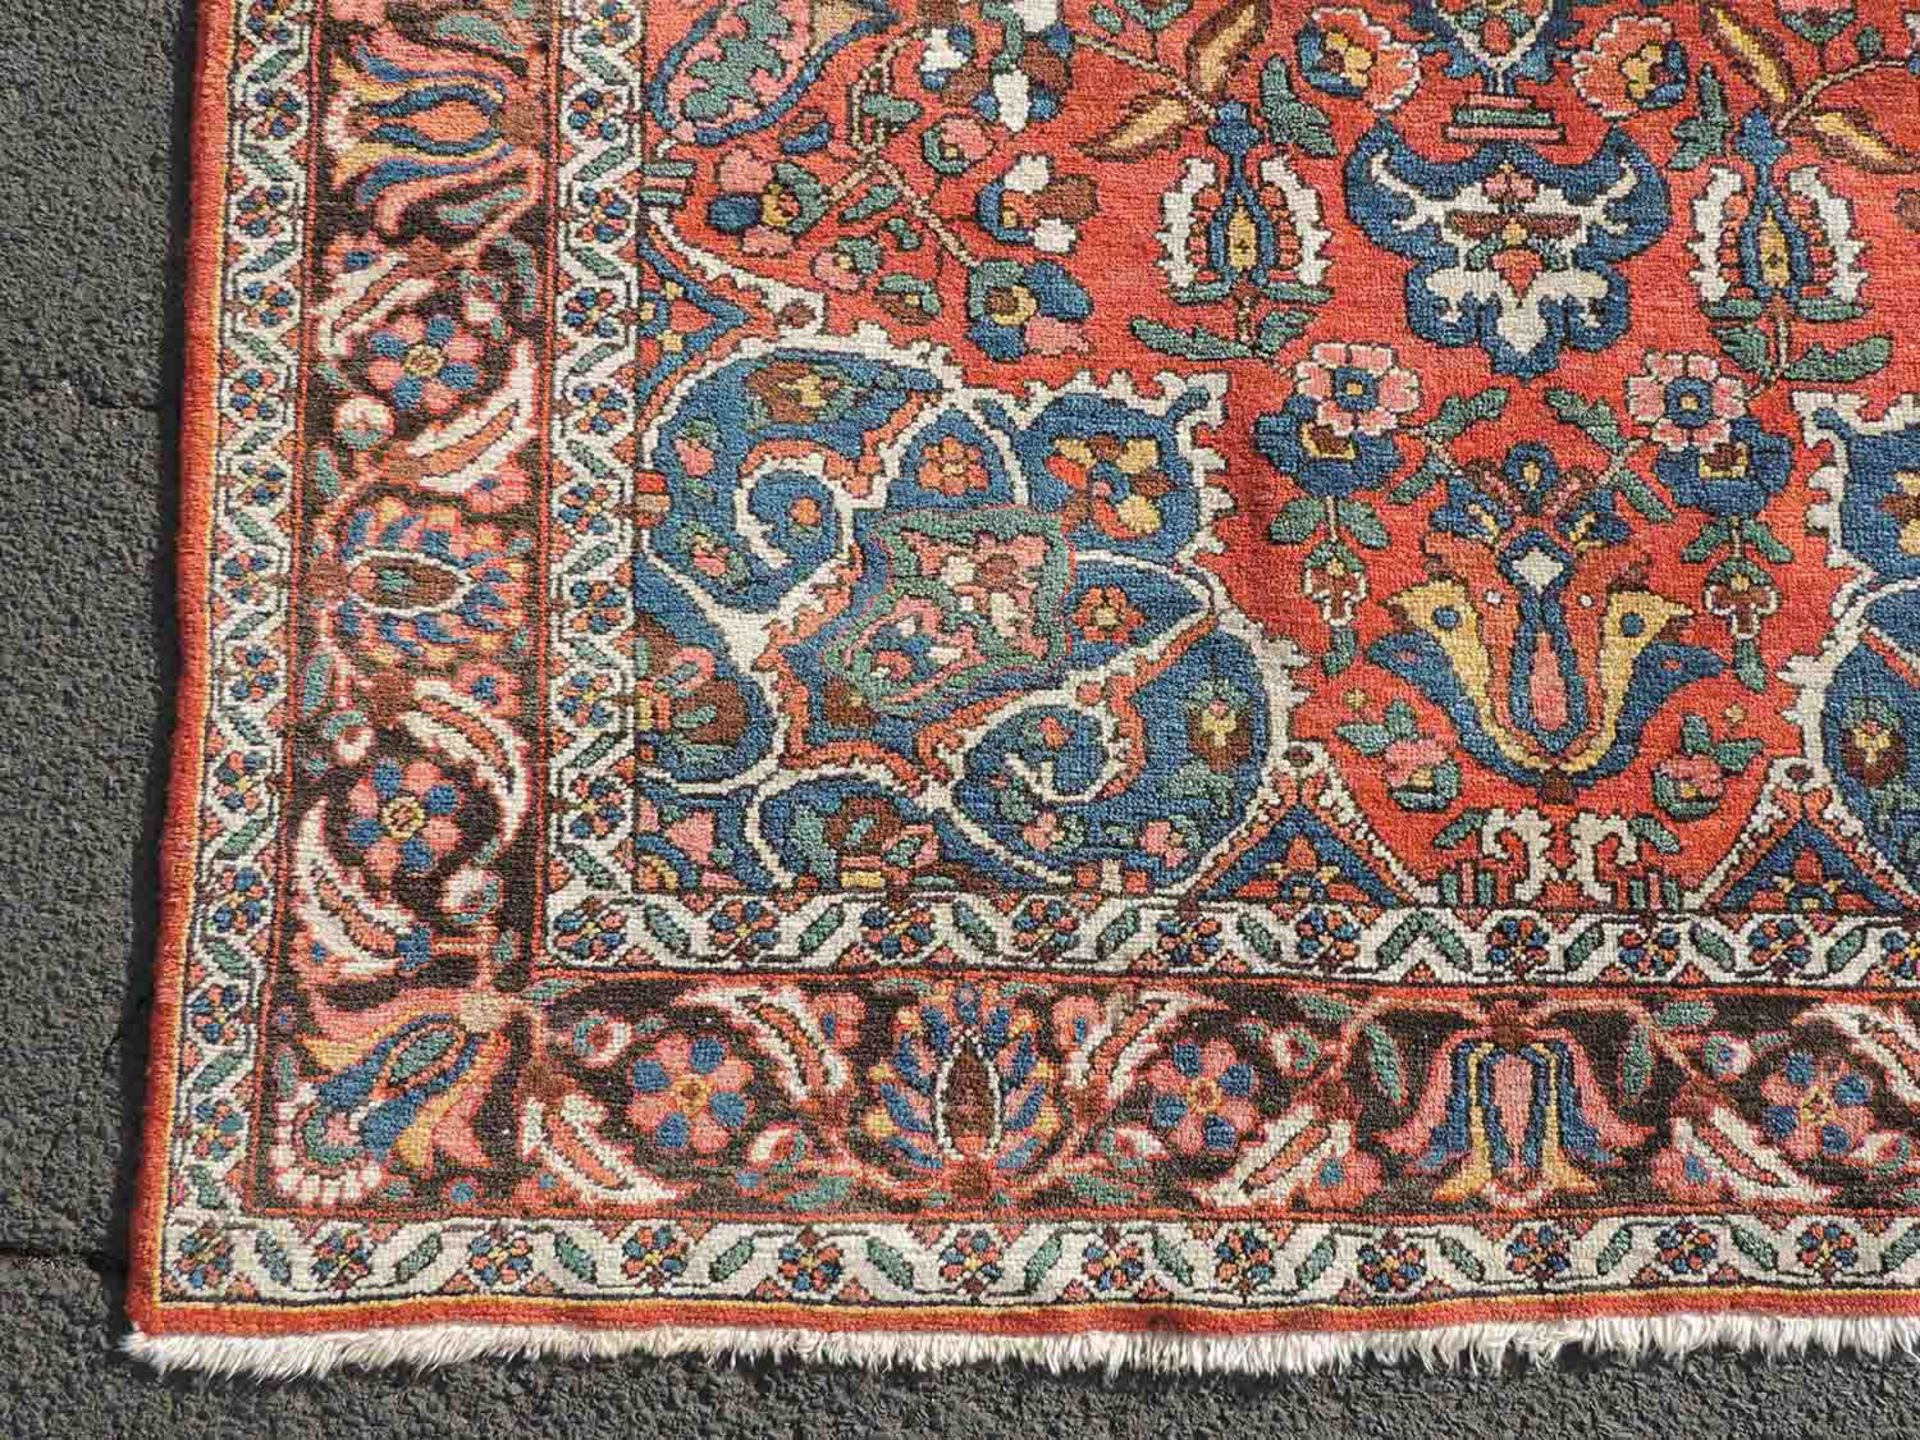 Bachtiar Stammesteppich. Iran, alt, um 1930.201 cm x 133 cm. Handgeknüpft, Wolle auf Baumwolle. - Image 7 of 12